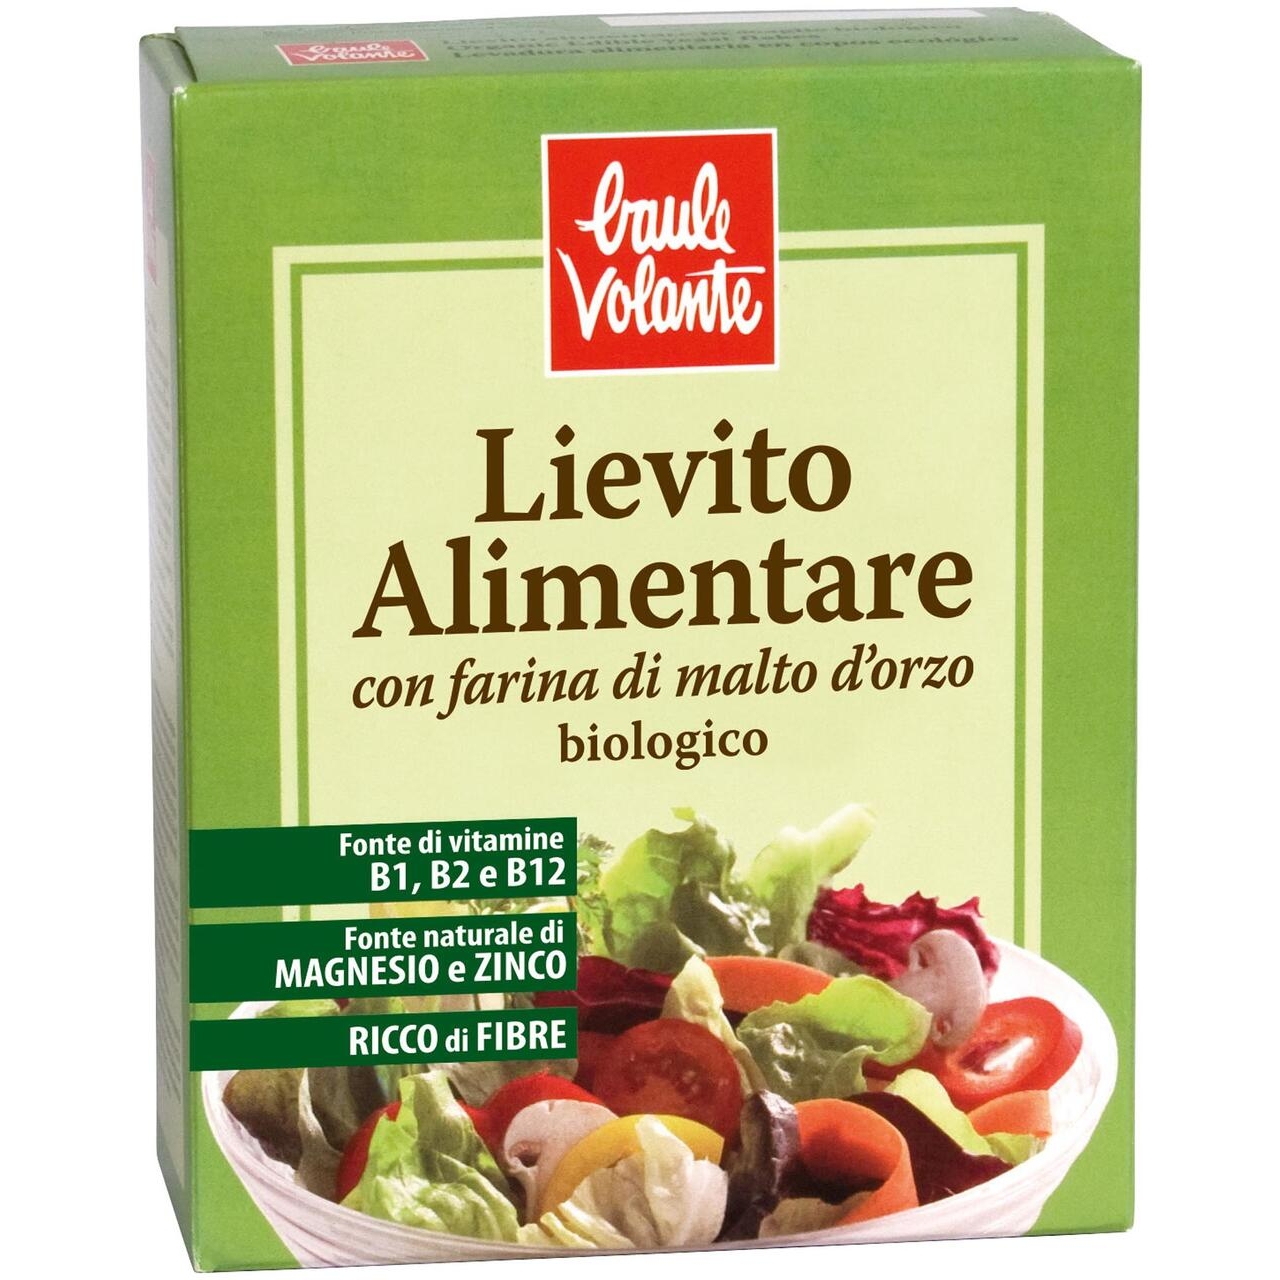 Image of Lievito Alimentare Baule Volante 150g